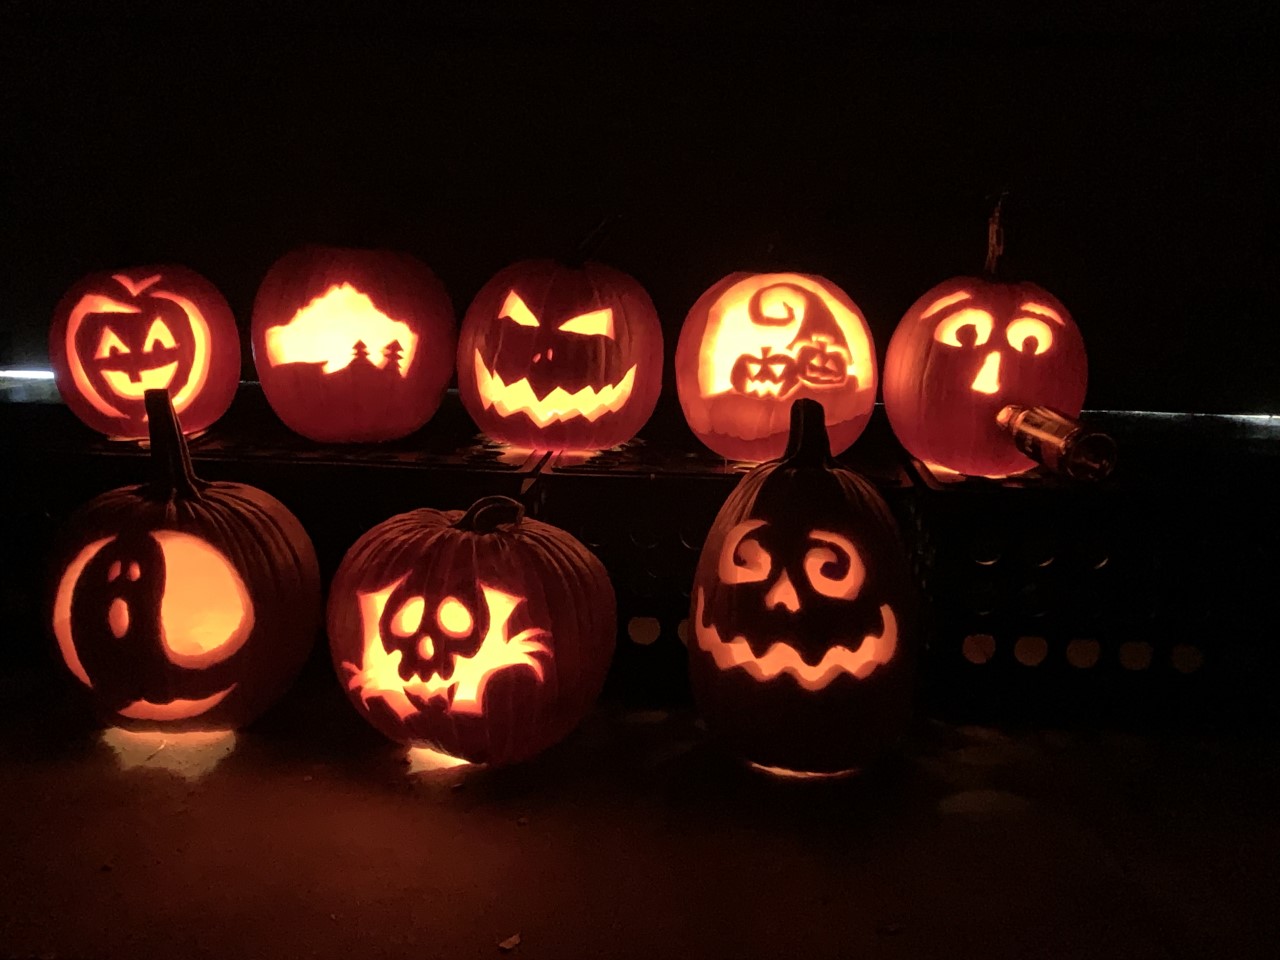 All the carved pumpkins lit up